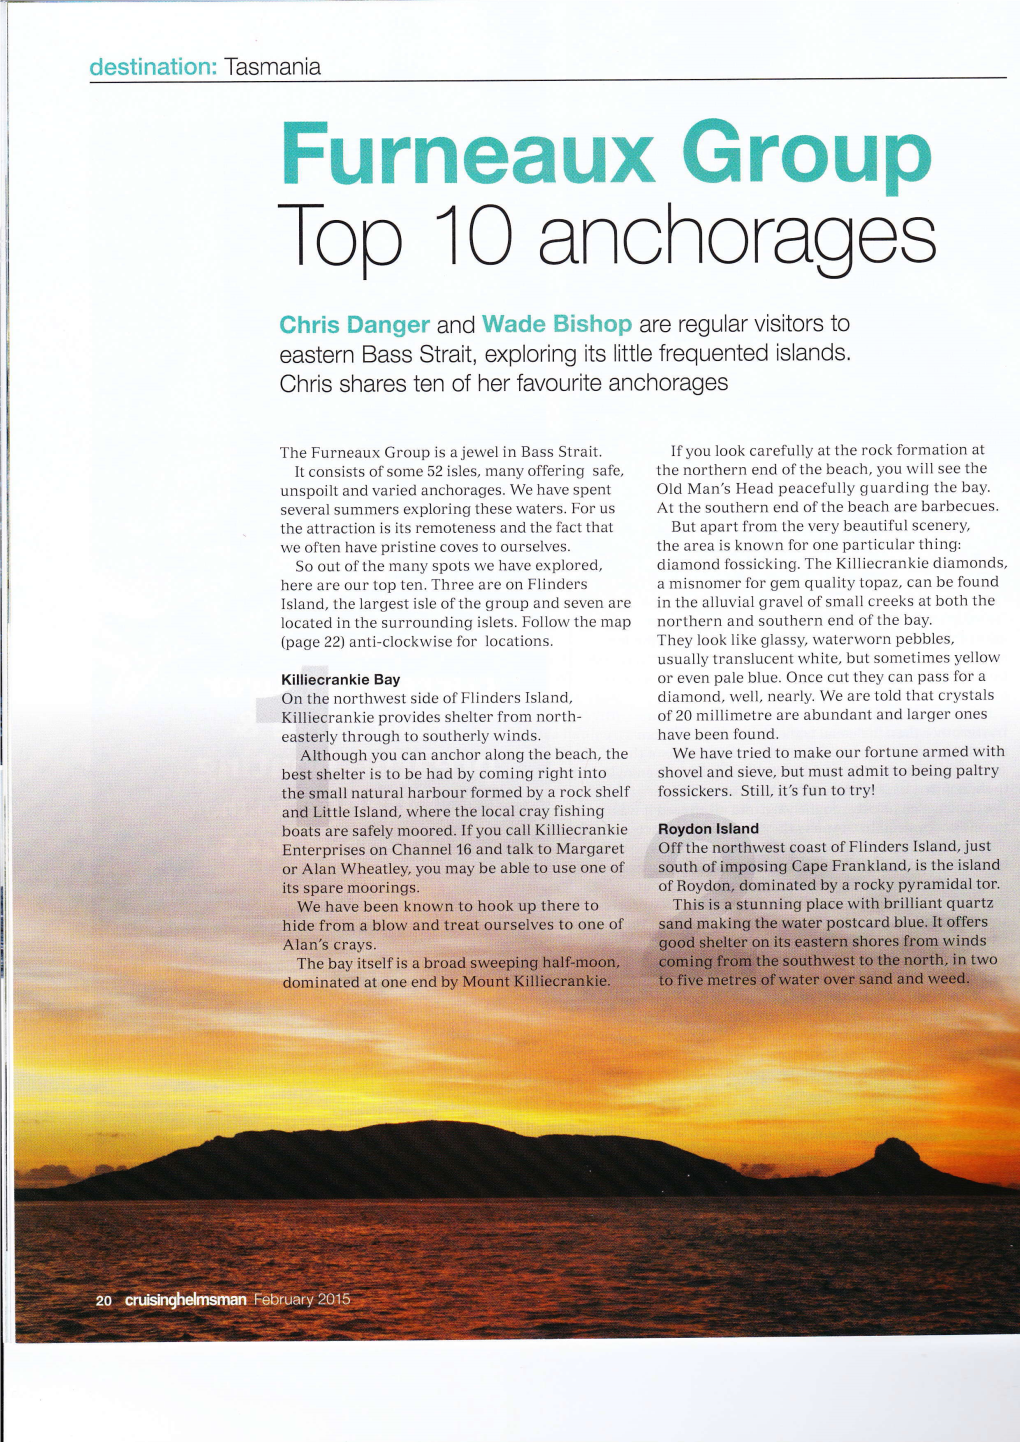 Top 10 Anchoragos